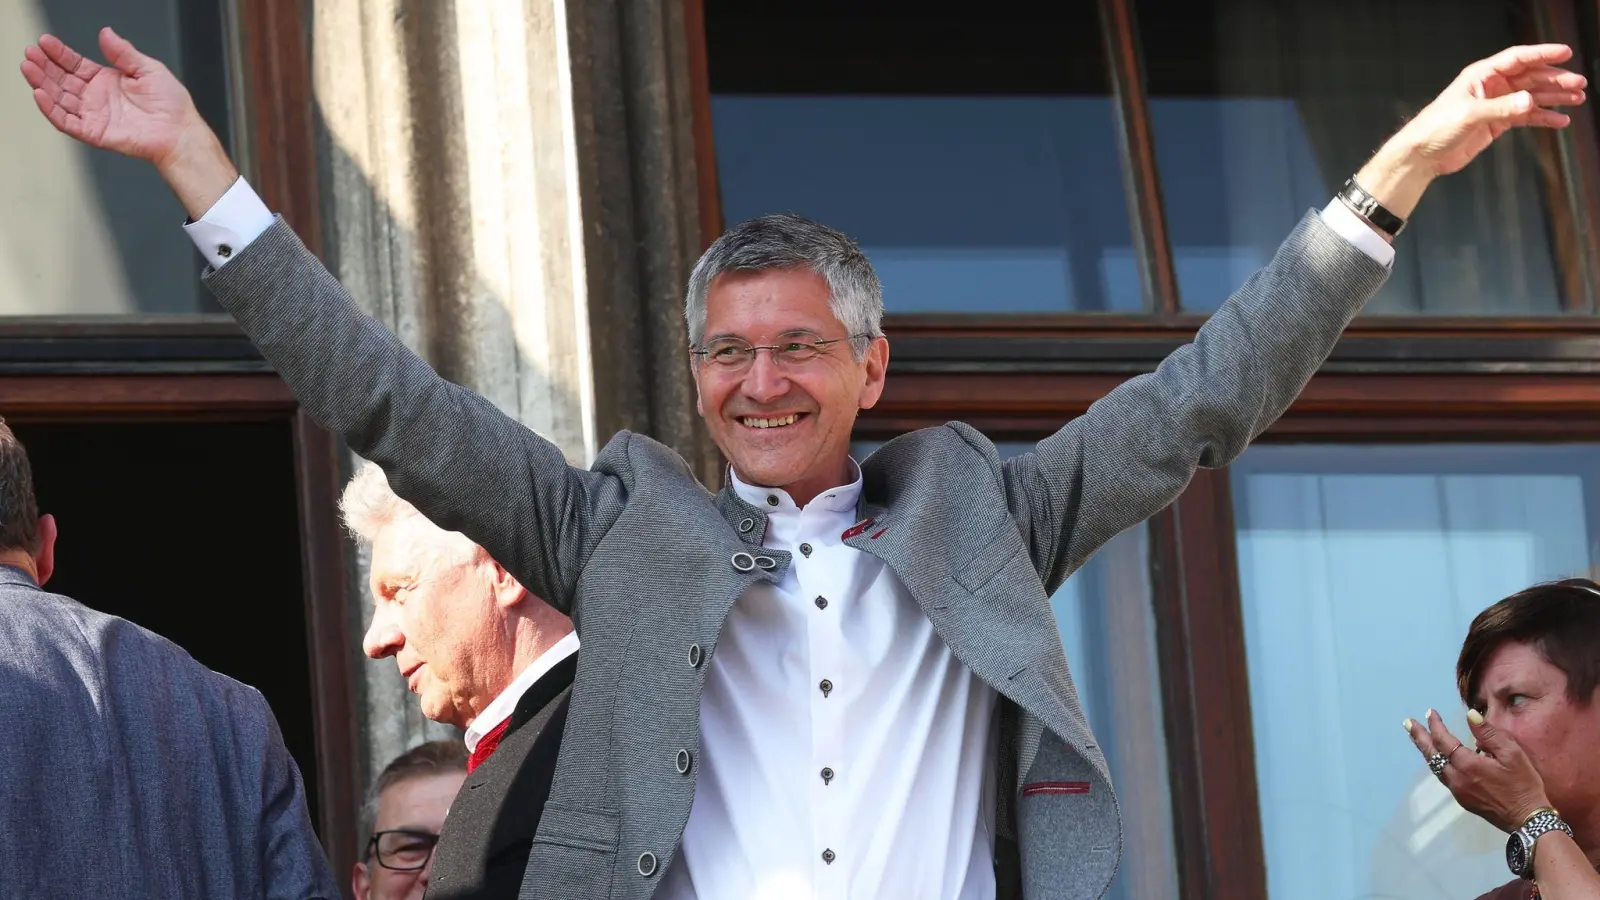 Bayern Münchens Präsident Herbert Hainer jubelt nach der Meisterschaft auf dem Rathaus-Balkon. (Foto: Karl-Josef Hildenbrand/dpa)